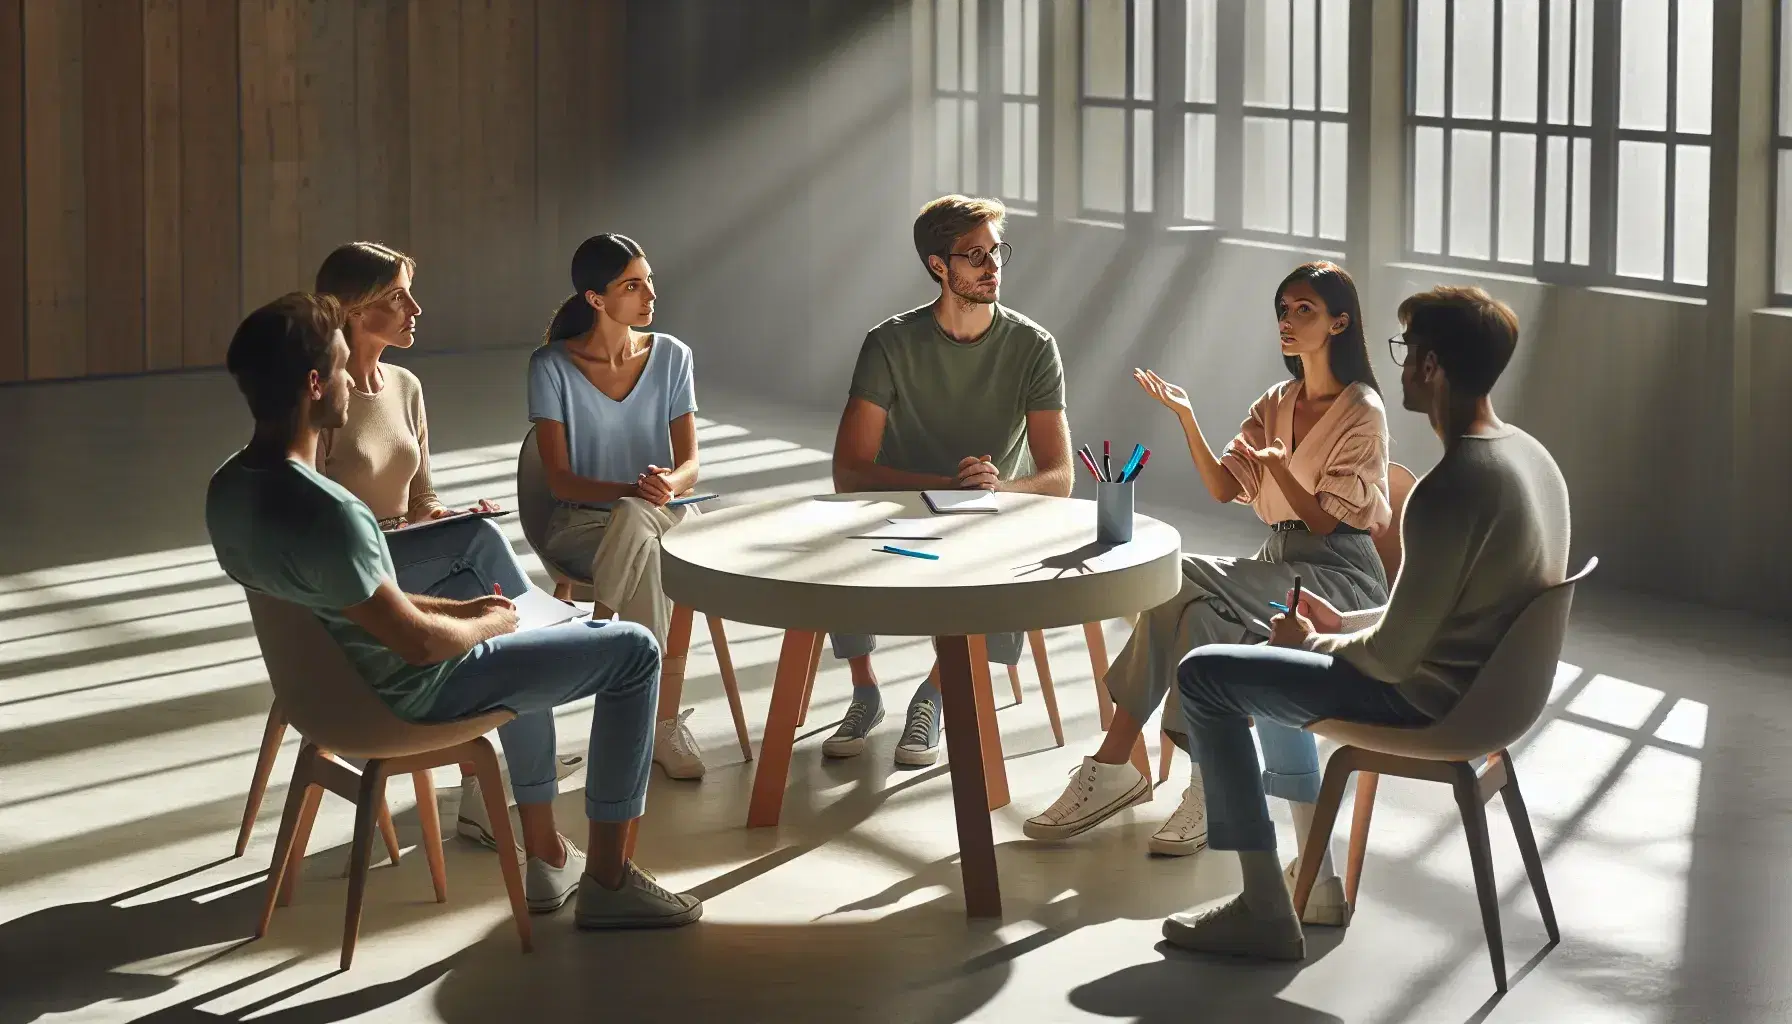 Grupo de cinco personas sentadas en círculo en una sala iluminada naturalmente, con una mesa redonda y materiales de escritura, participando en una discusión activa.